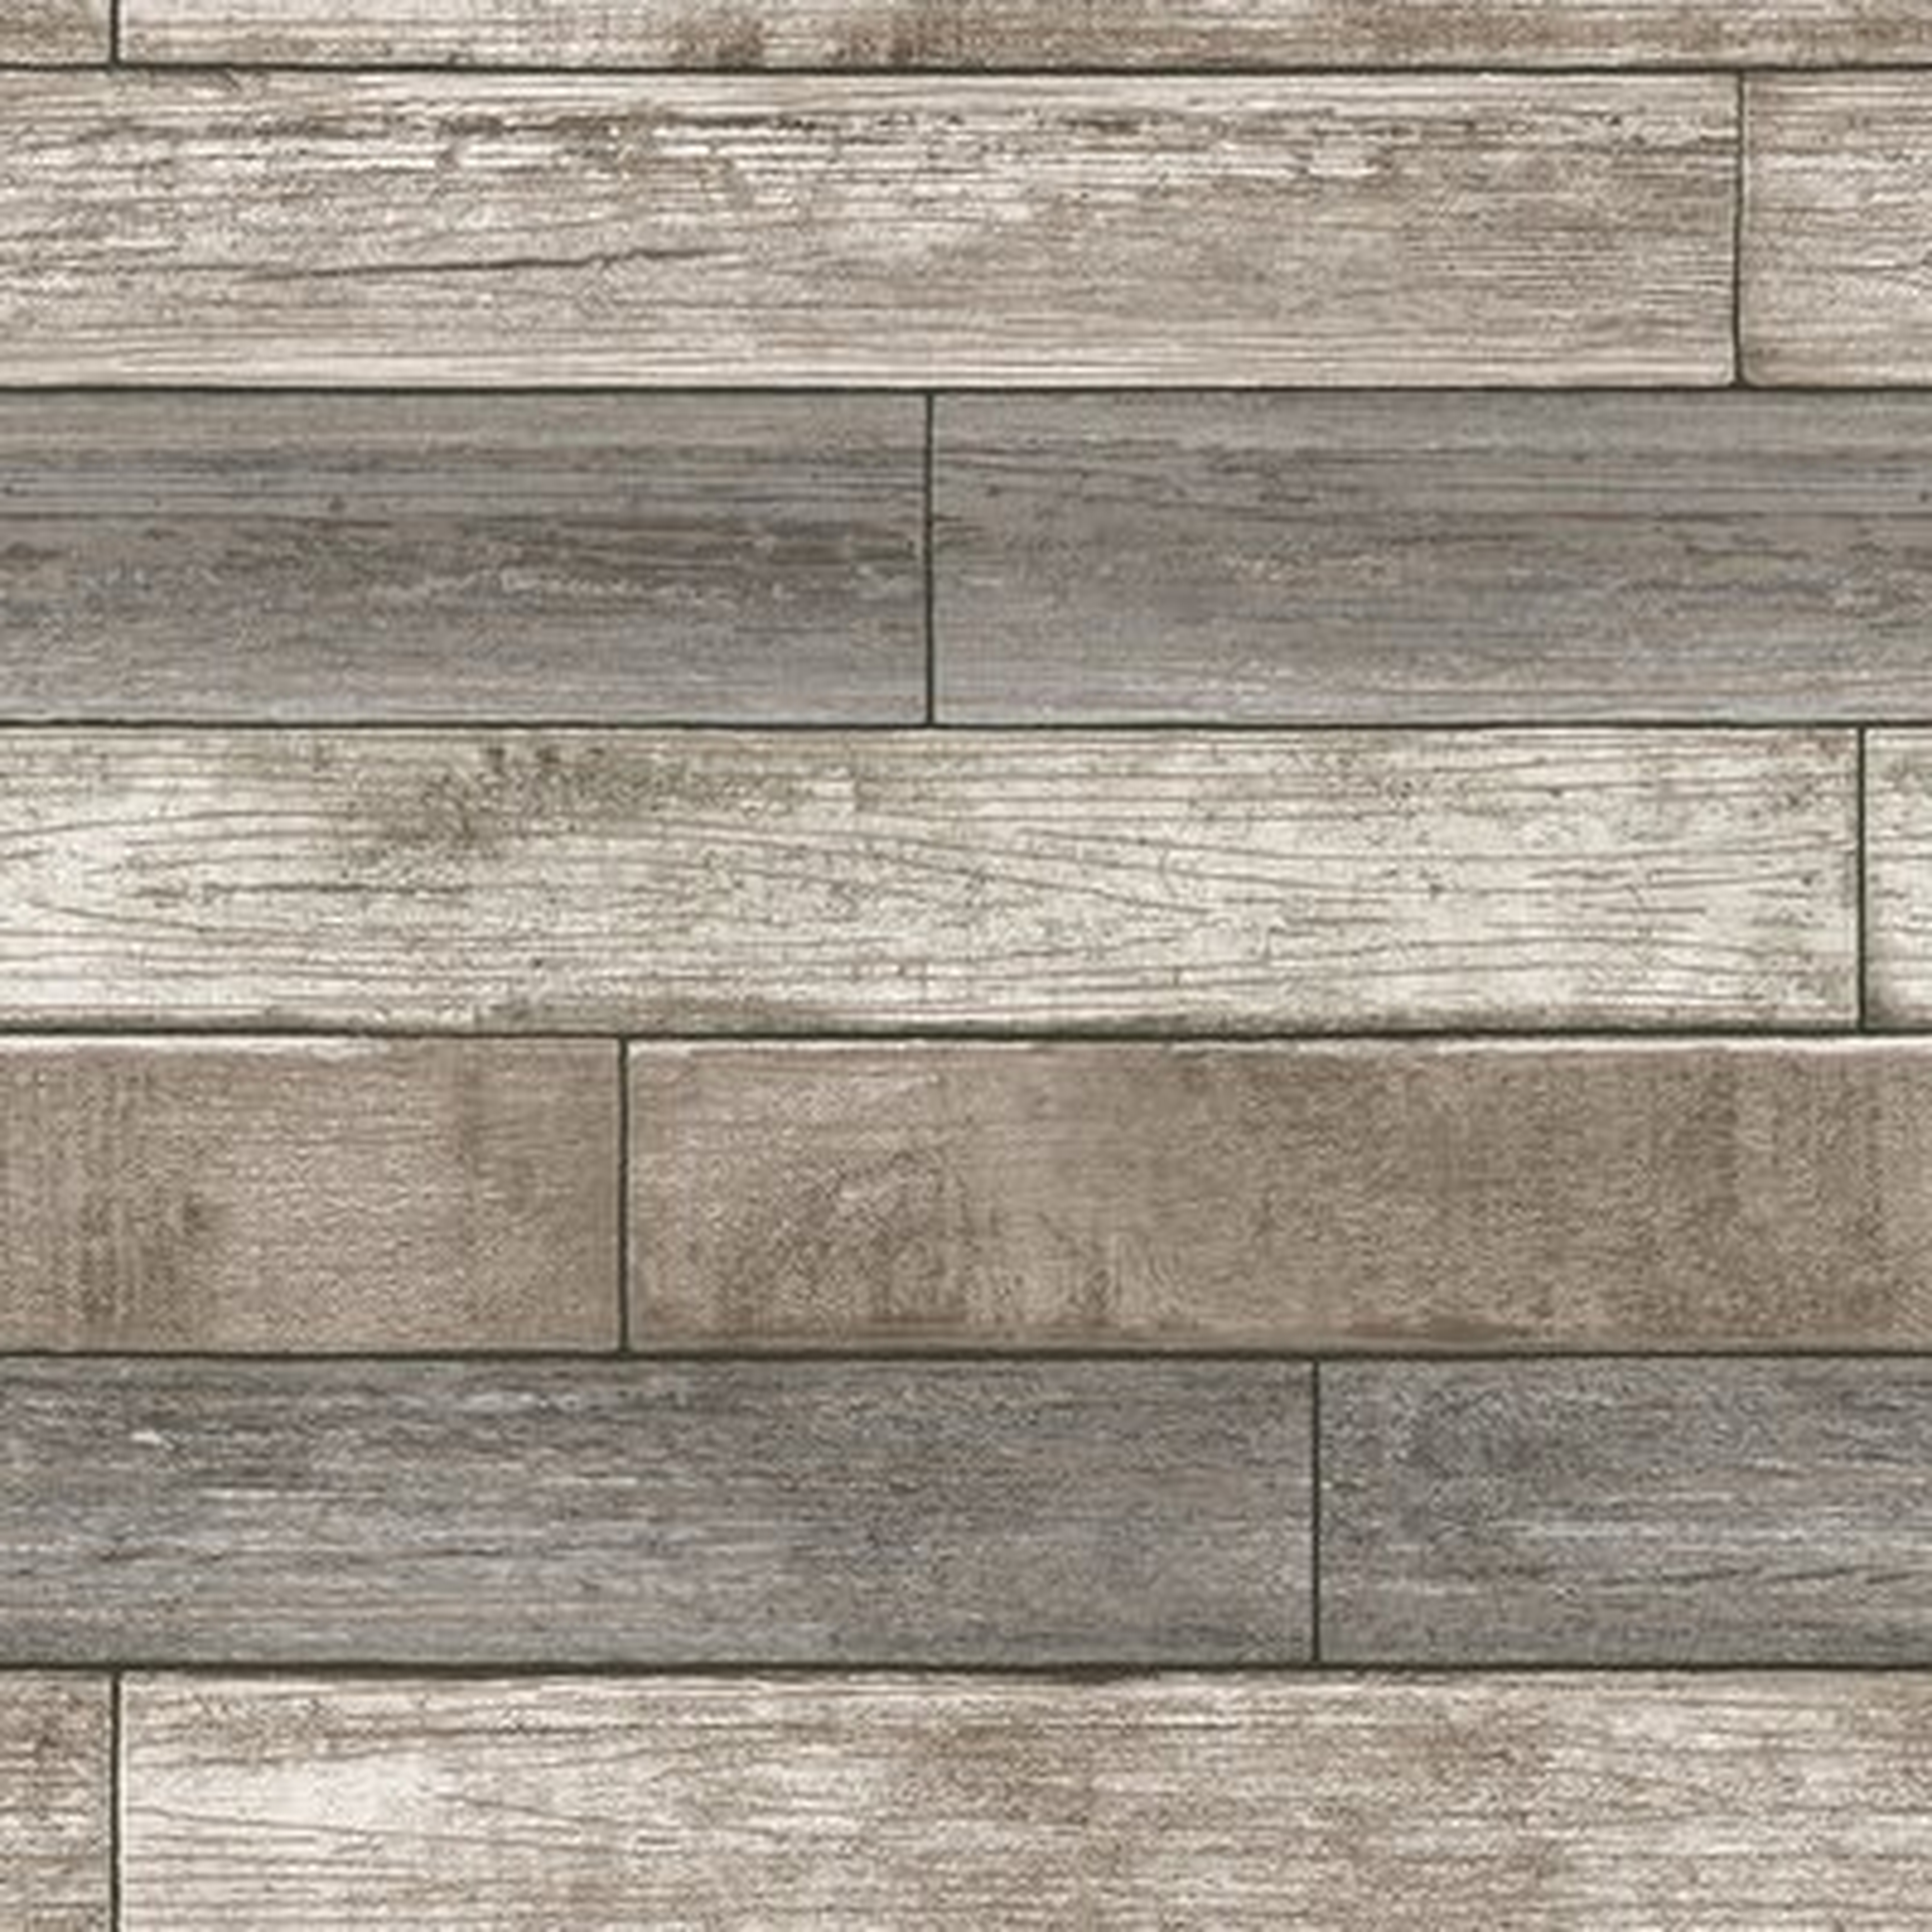 Beshears 18' x 20.5" Reclaimed Wood Plank Wallpaper Roll - AllModern